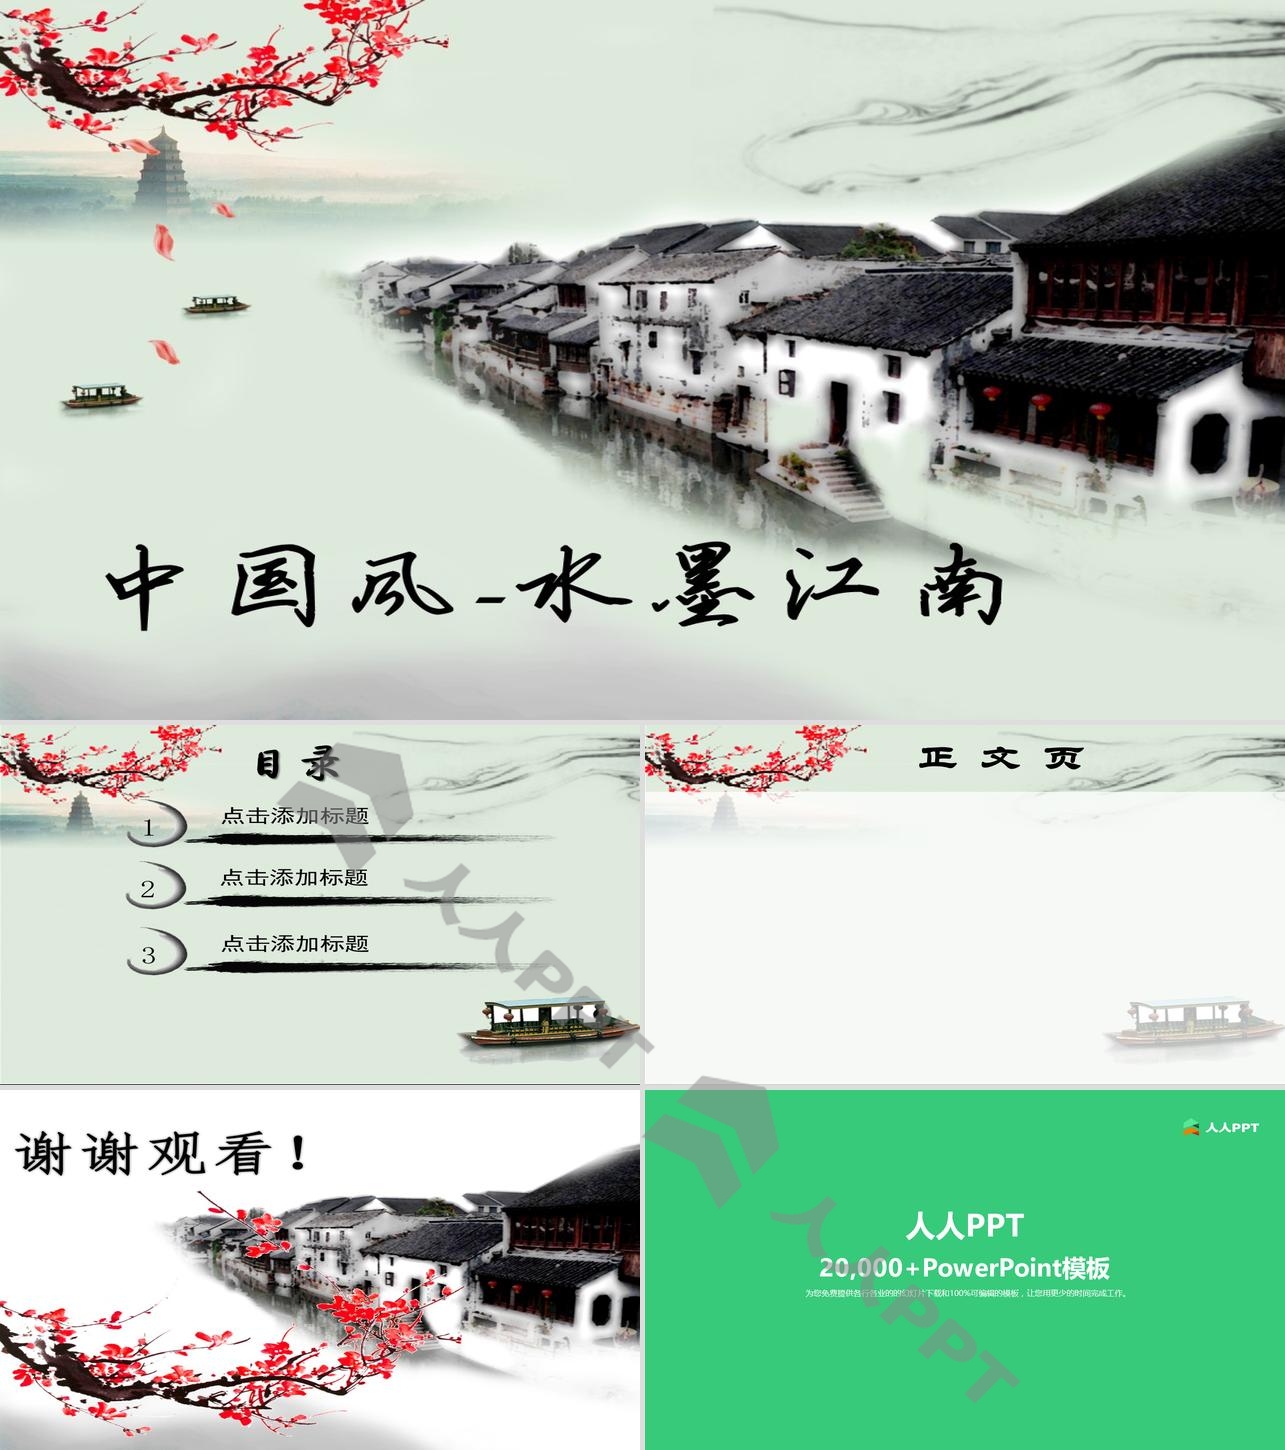 水墨画背景的中国风幻灯片模板长图